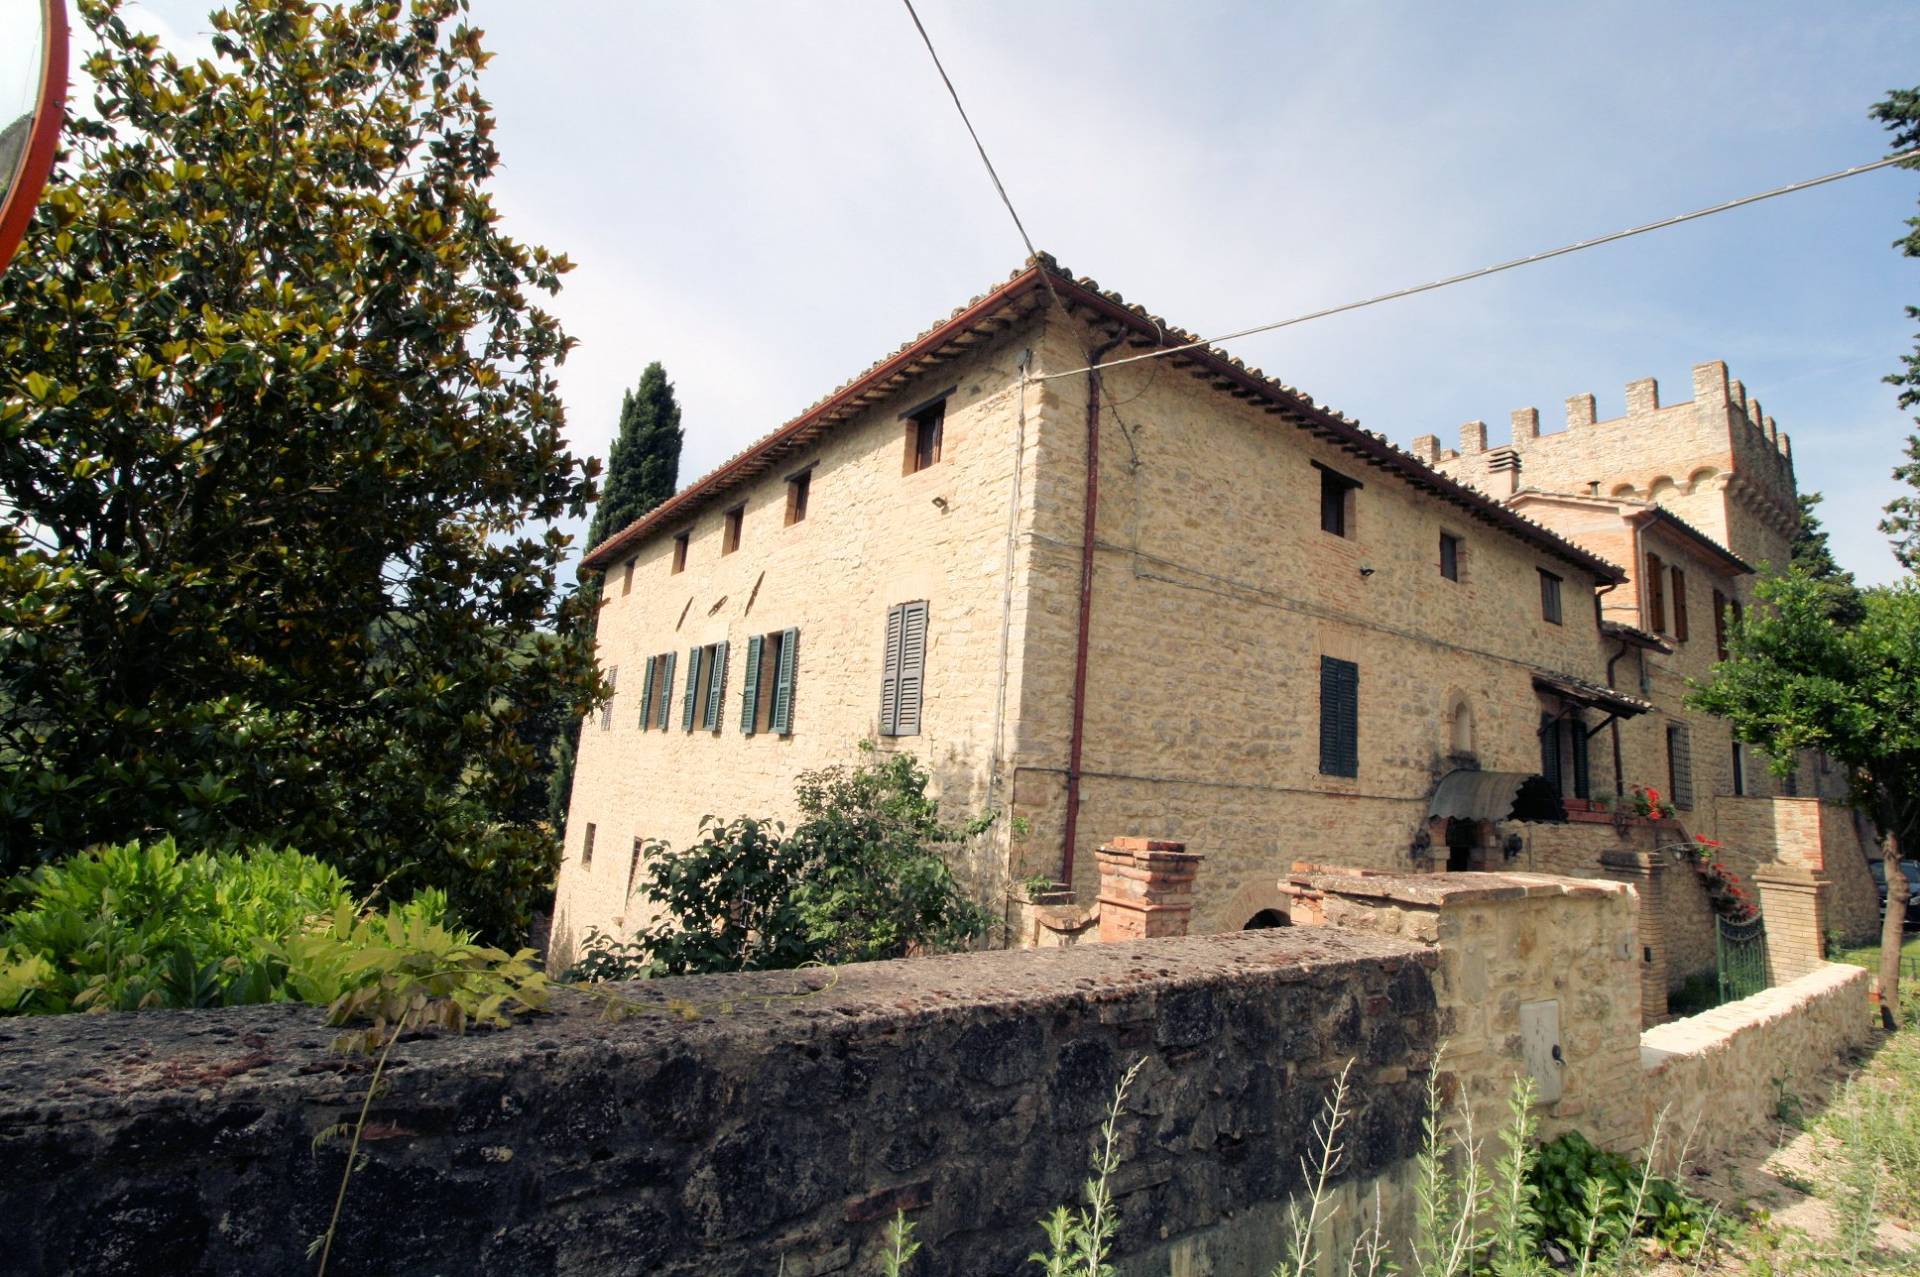 Rustico / Casale in vendita a Perugia, 21 locali, zona Località: ColleUmbertoI, prezzo € 730.000 | PortaleAgenzieImmobiliari.it